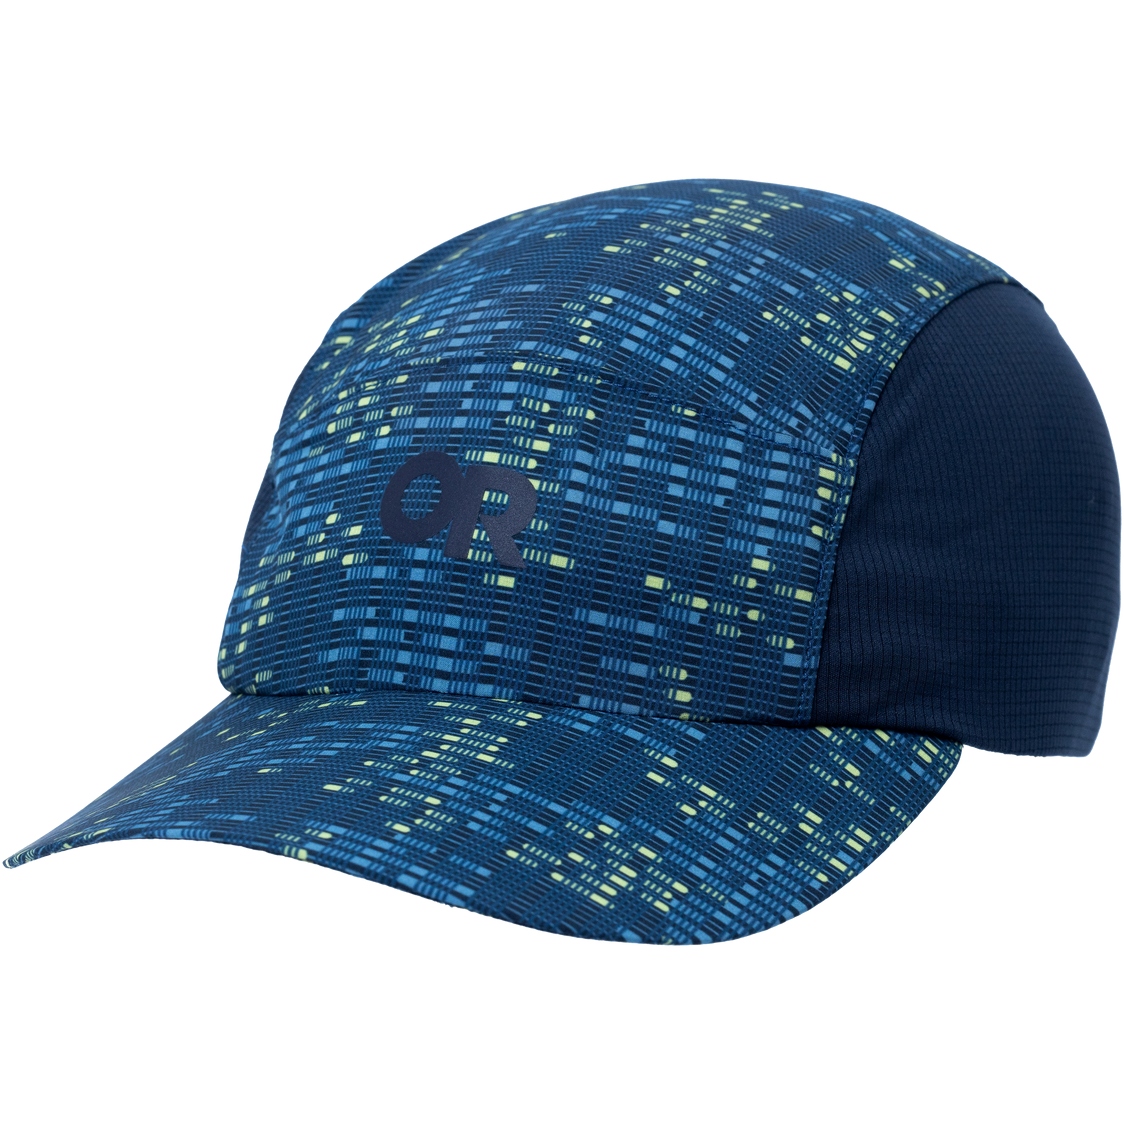 Produktbild von Outdoor Research Swift Ultra Light Cap - dark navy digital stripe/naval blue